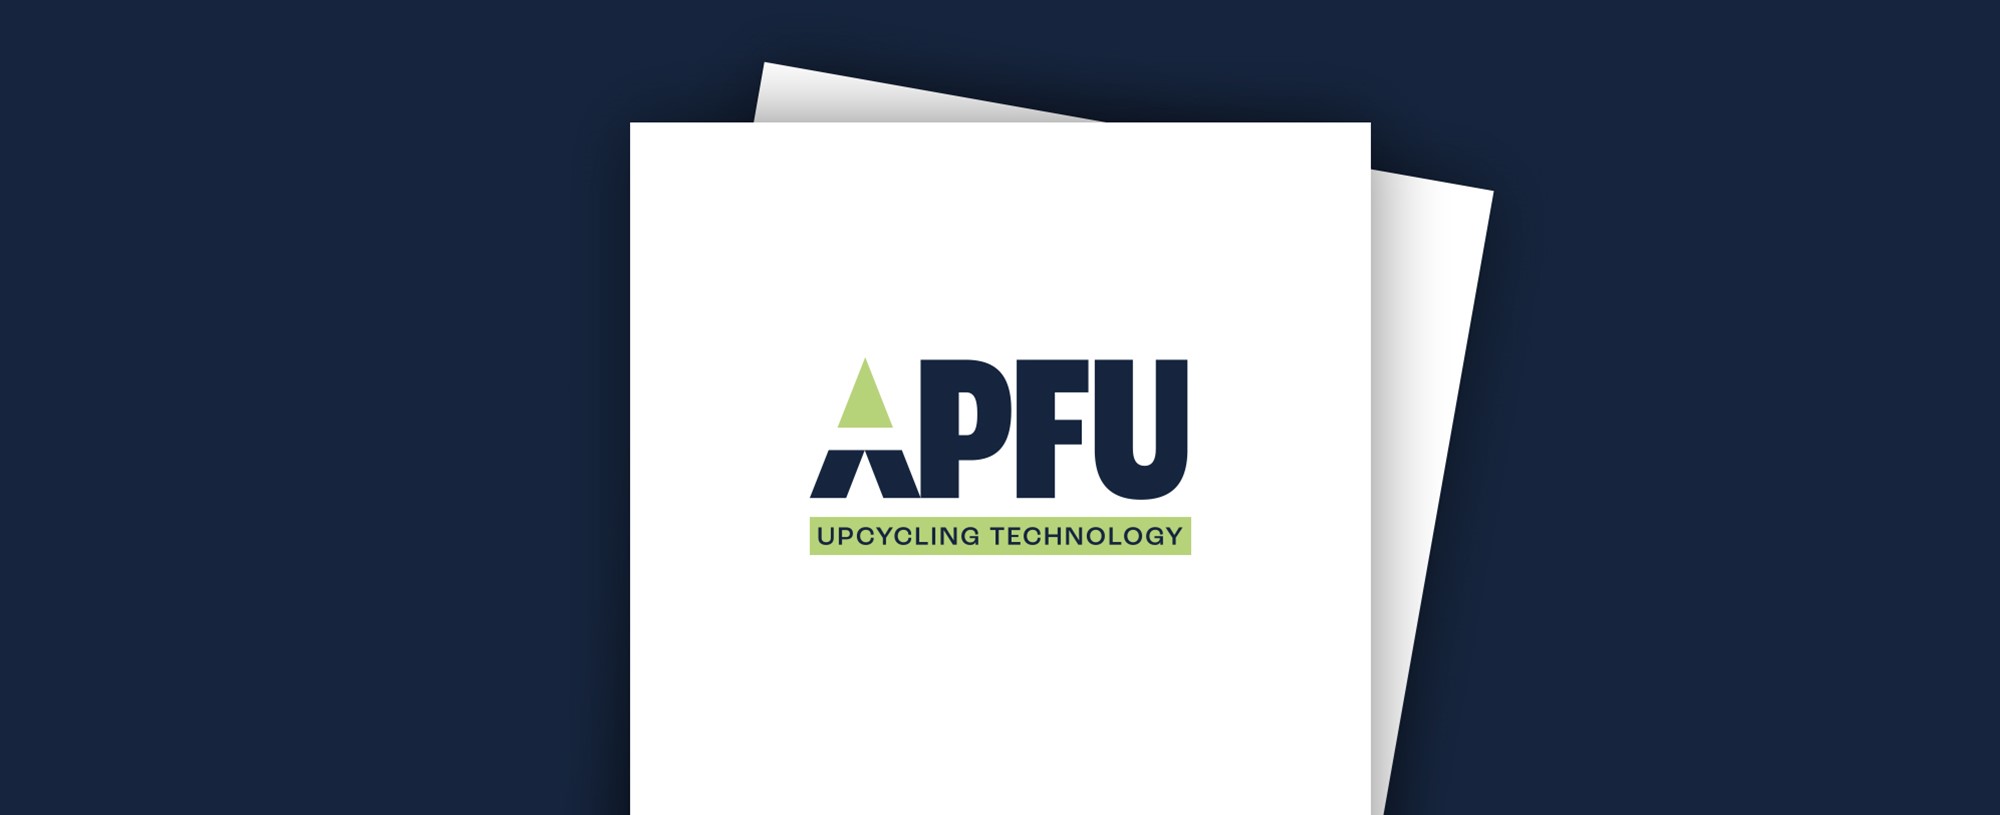 APFU Branding